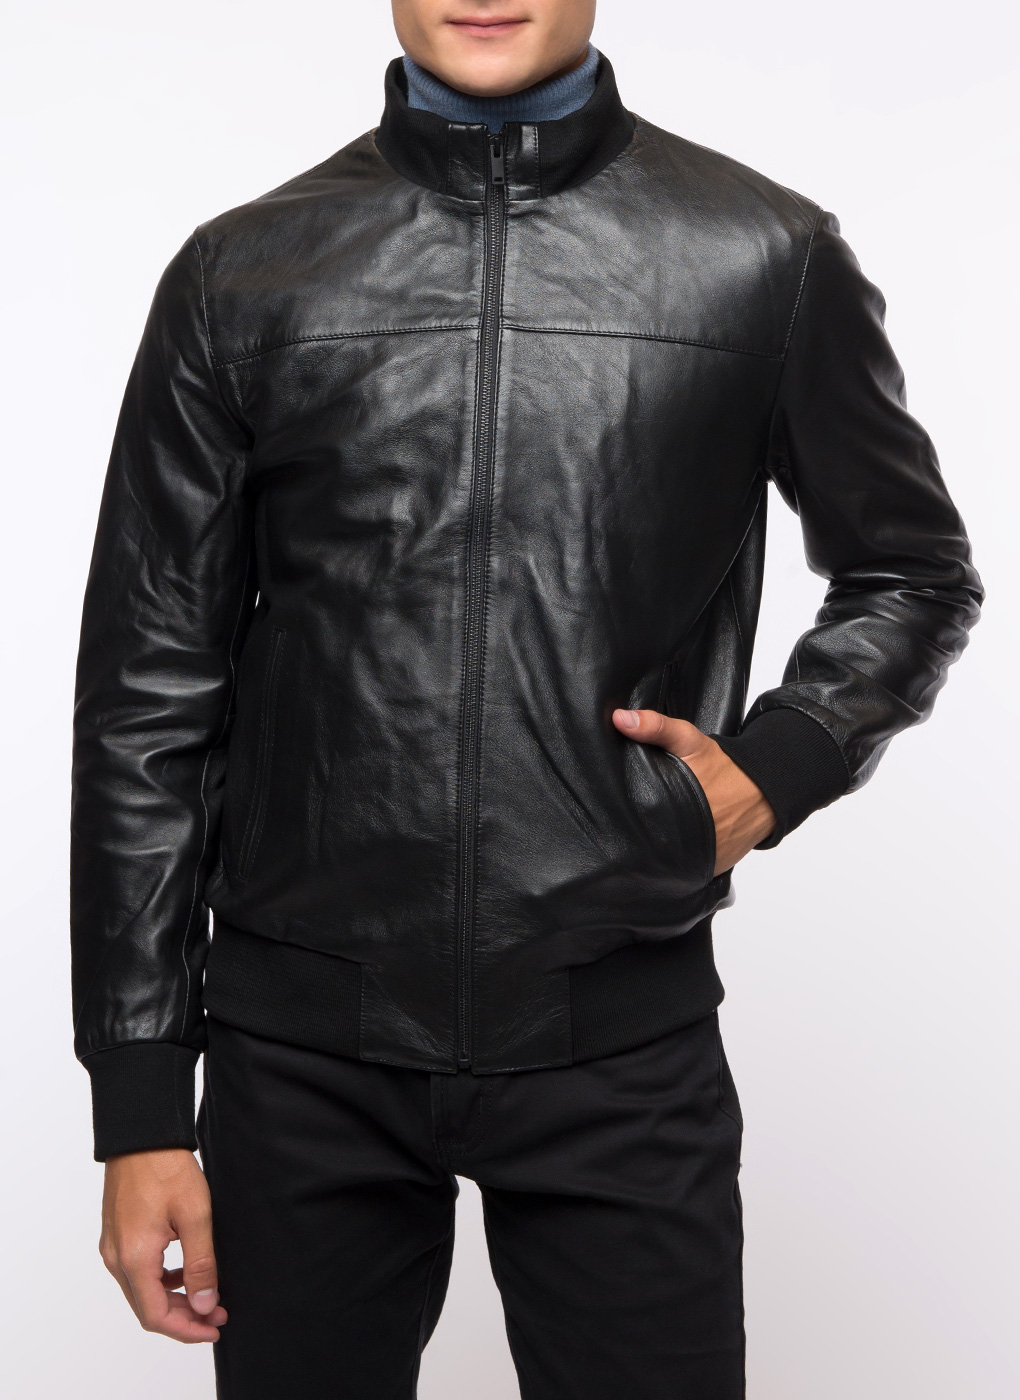 Кожаная куртка мужская Каляев 1624717 черная 60 RU